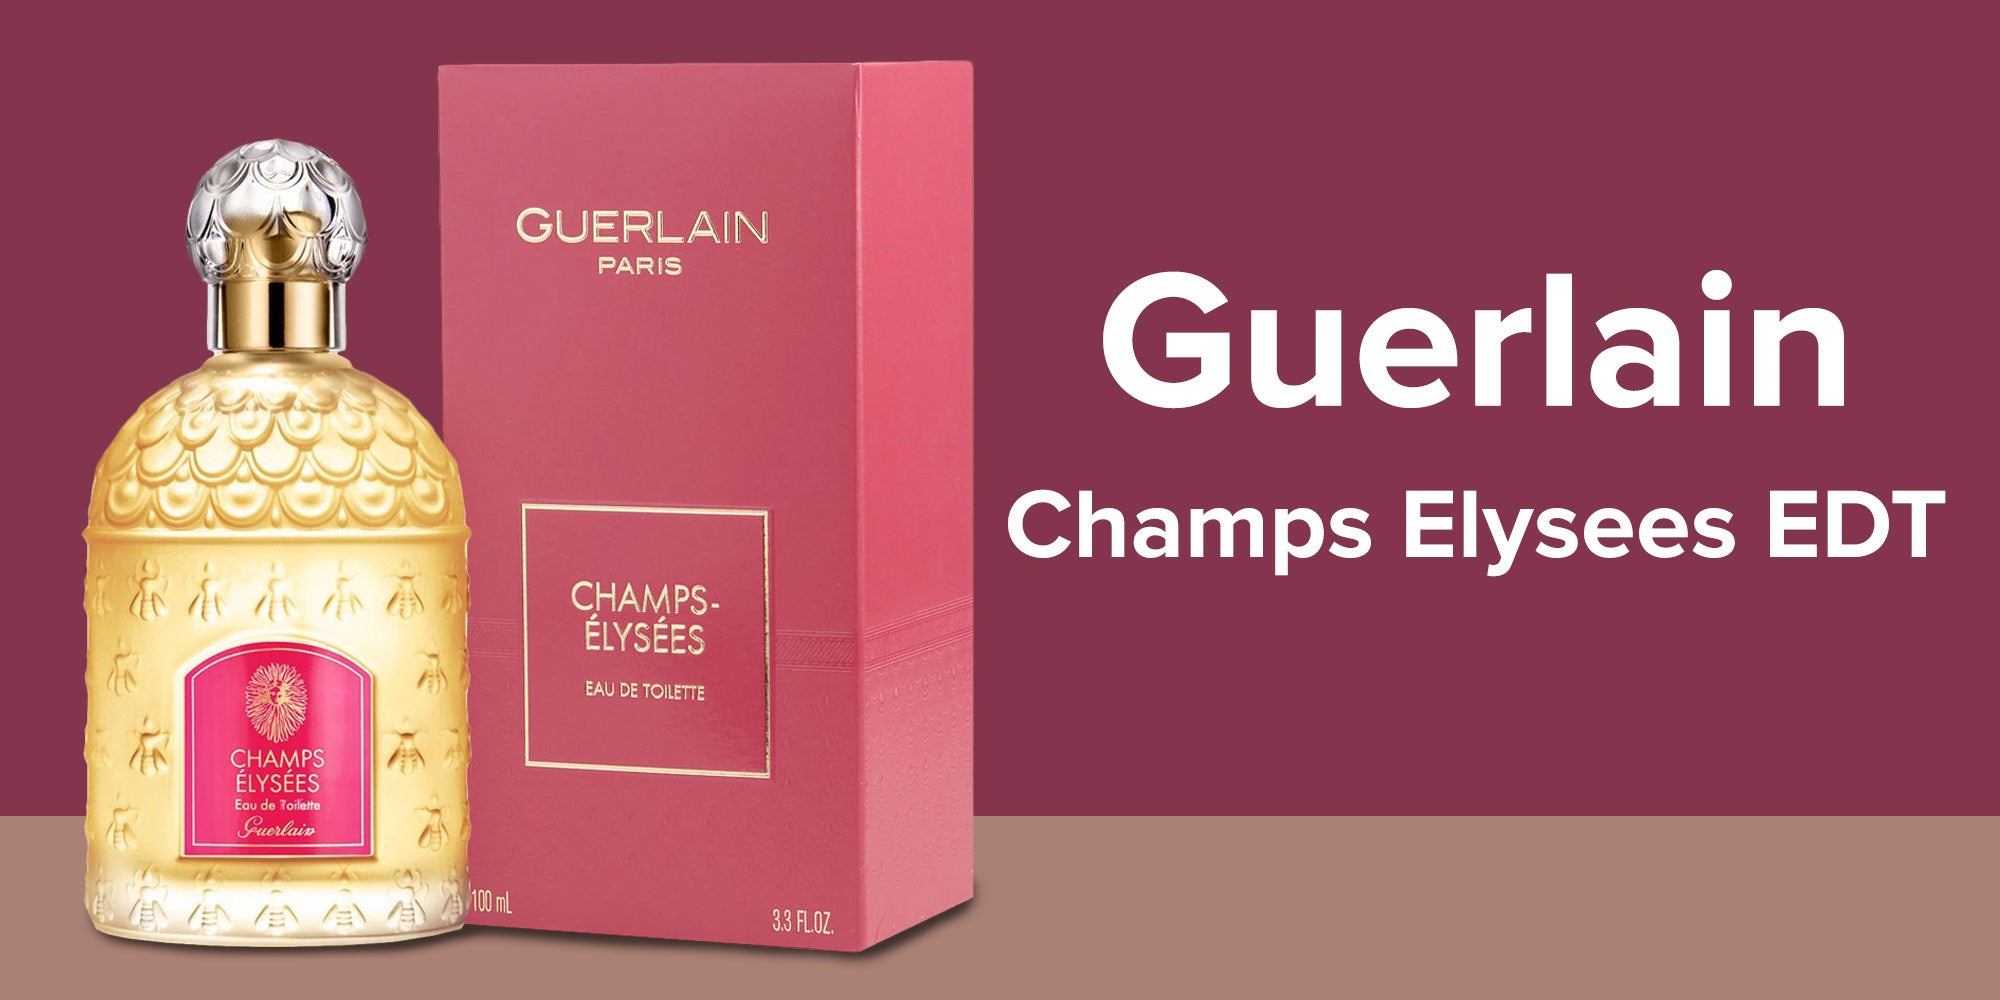 GUERLAIN PARIS Champs-elysees Bag Pink 